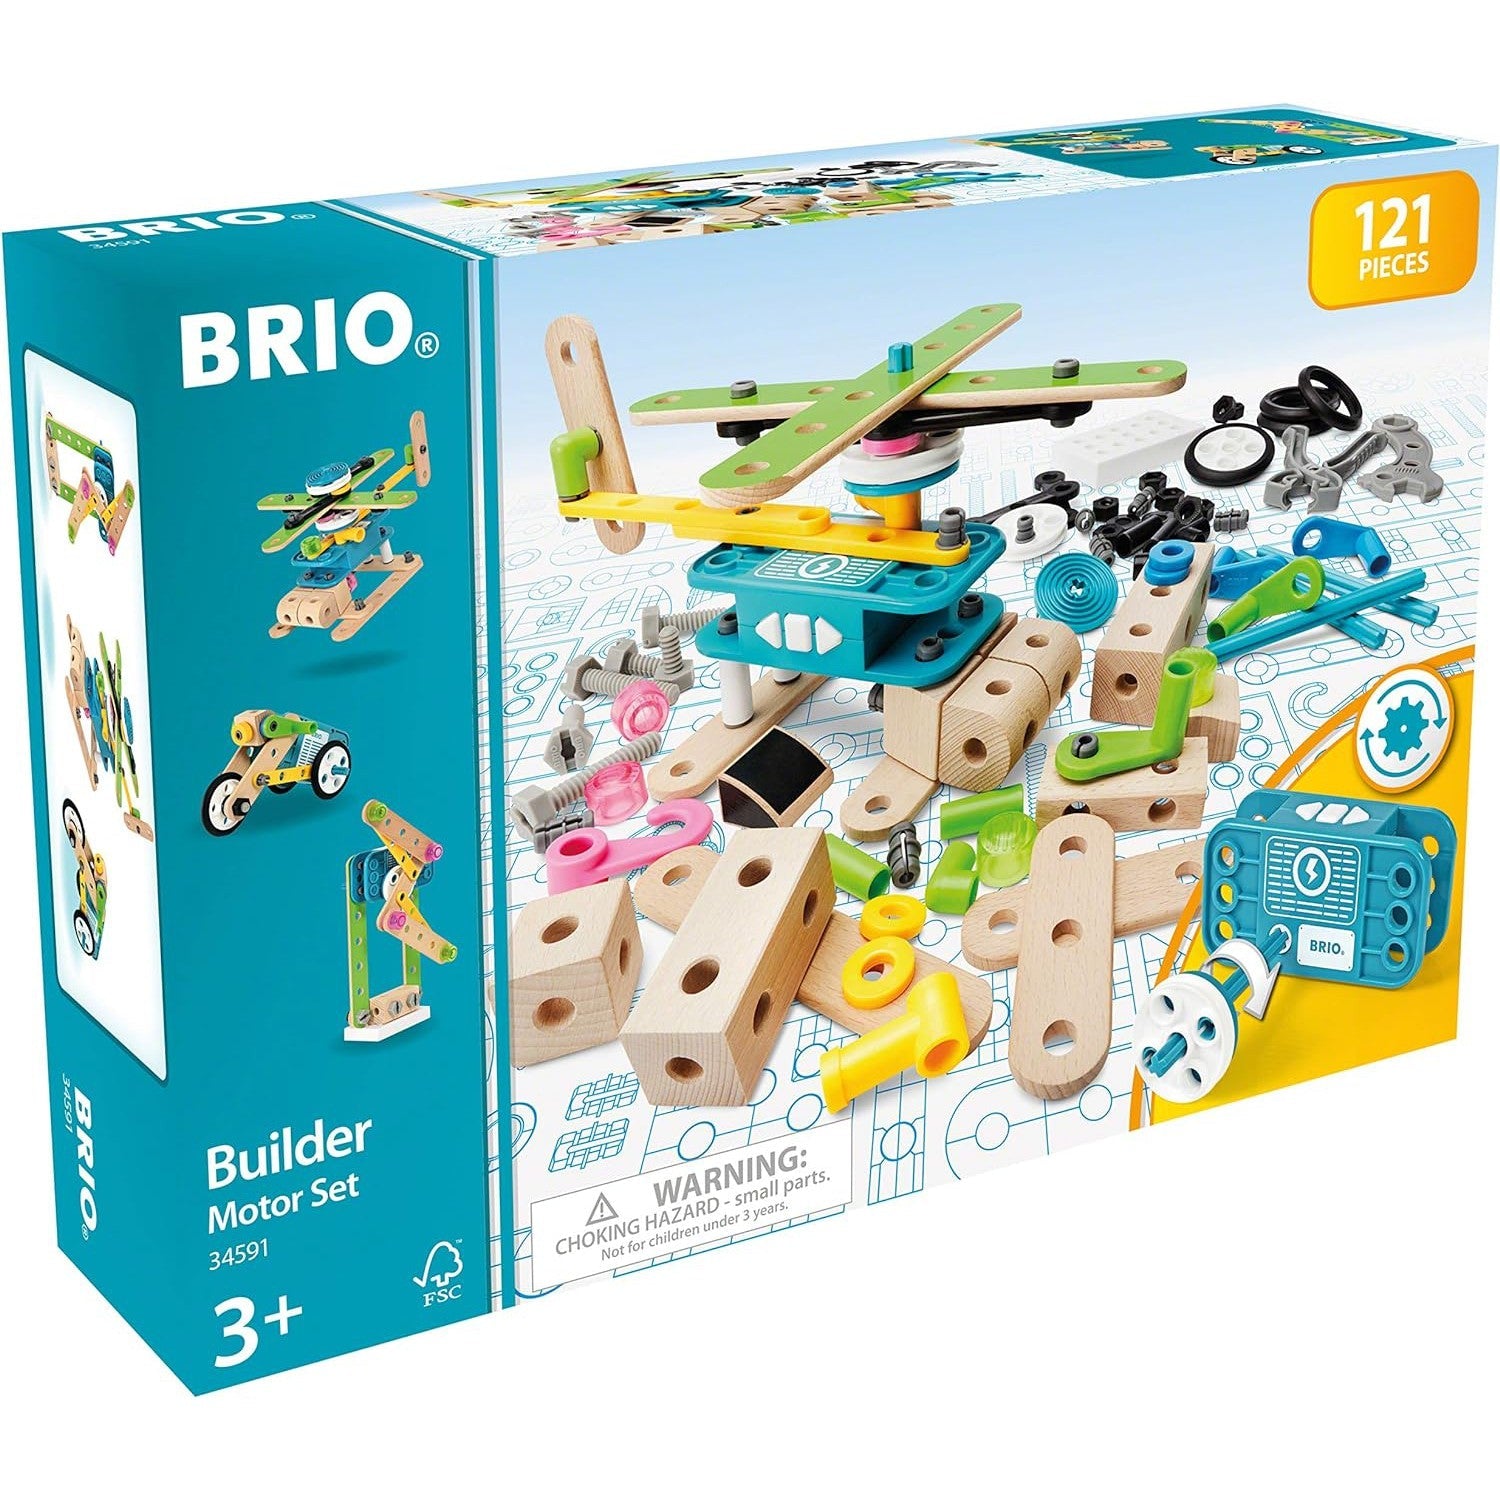 BRIO Builder Motor Set - 121 Pieces-BRIO-Little Giant Kidz